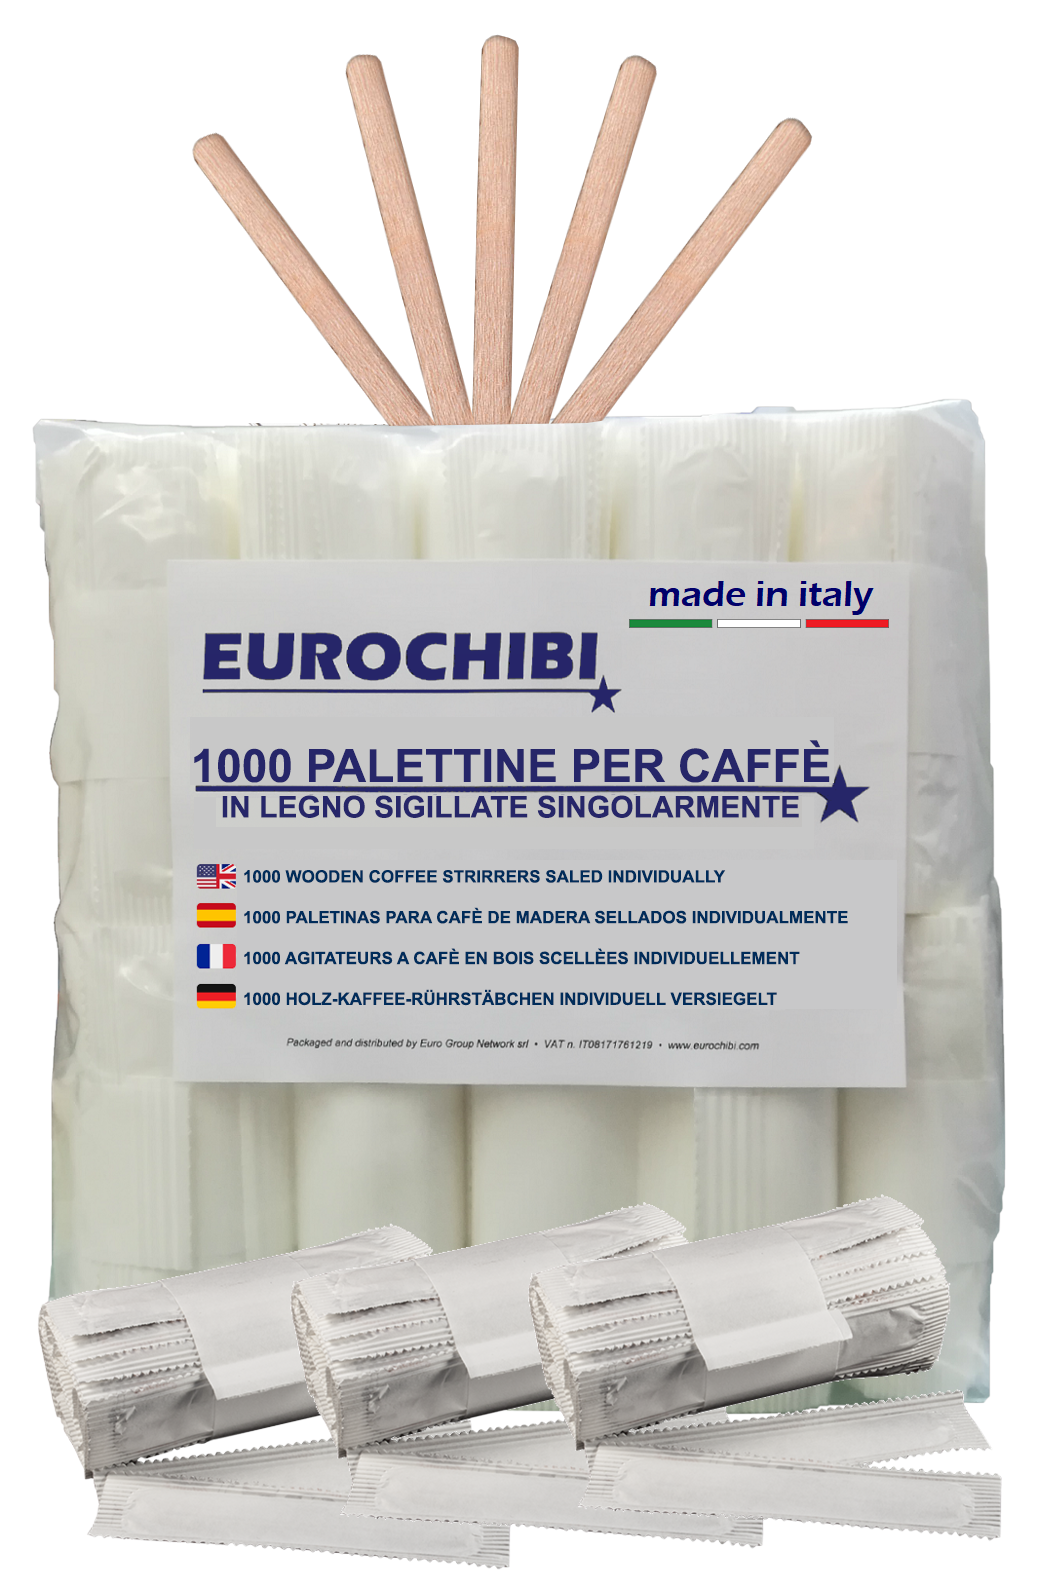 Eurochibi ® 1000 Palettine Per Caffè In Legno Sigillate Singolarmente